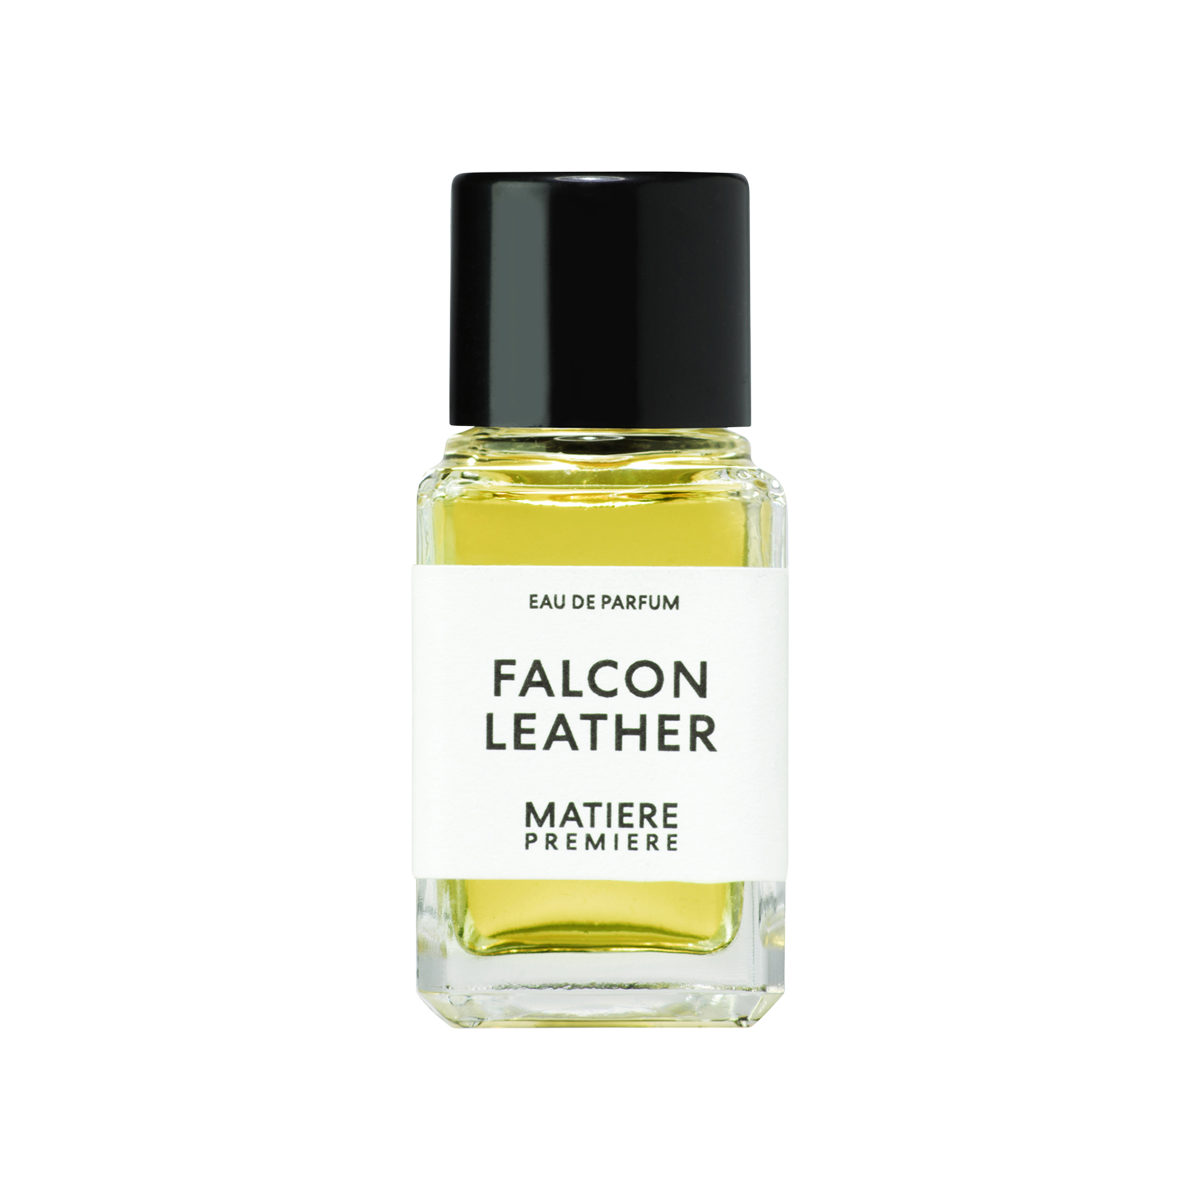 Matiere Premiere - Falcon Leather Eau de Parfum